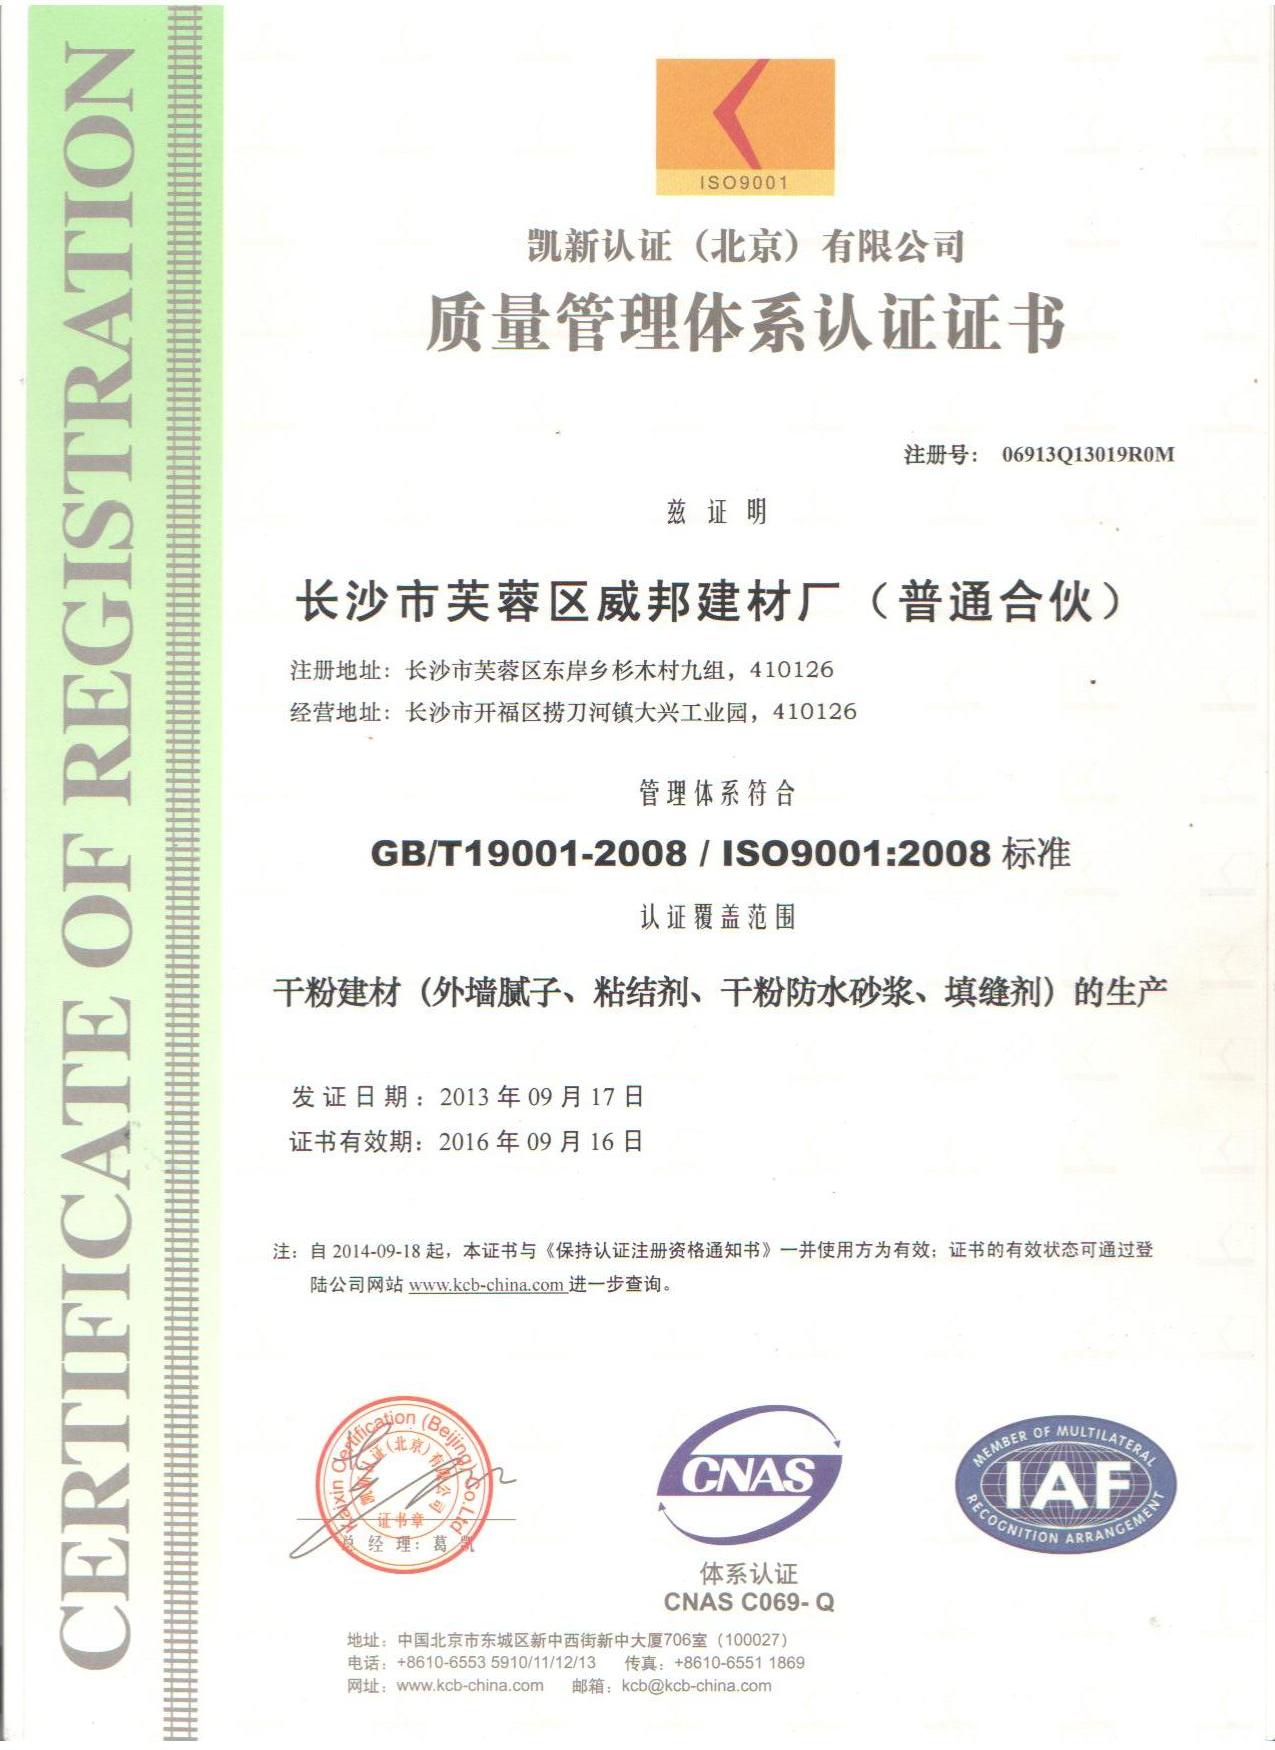 本企業已通過ISO9001國際質量體系